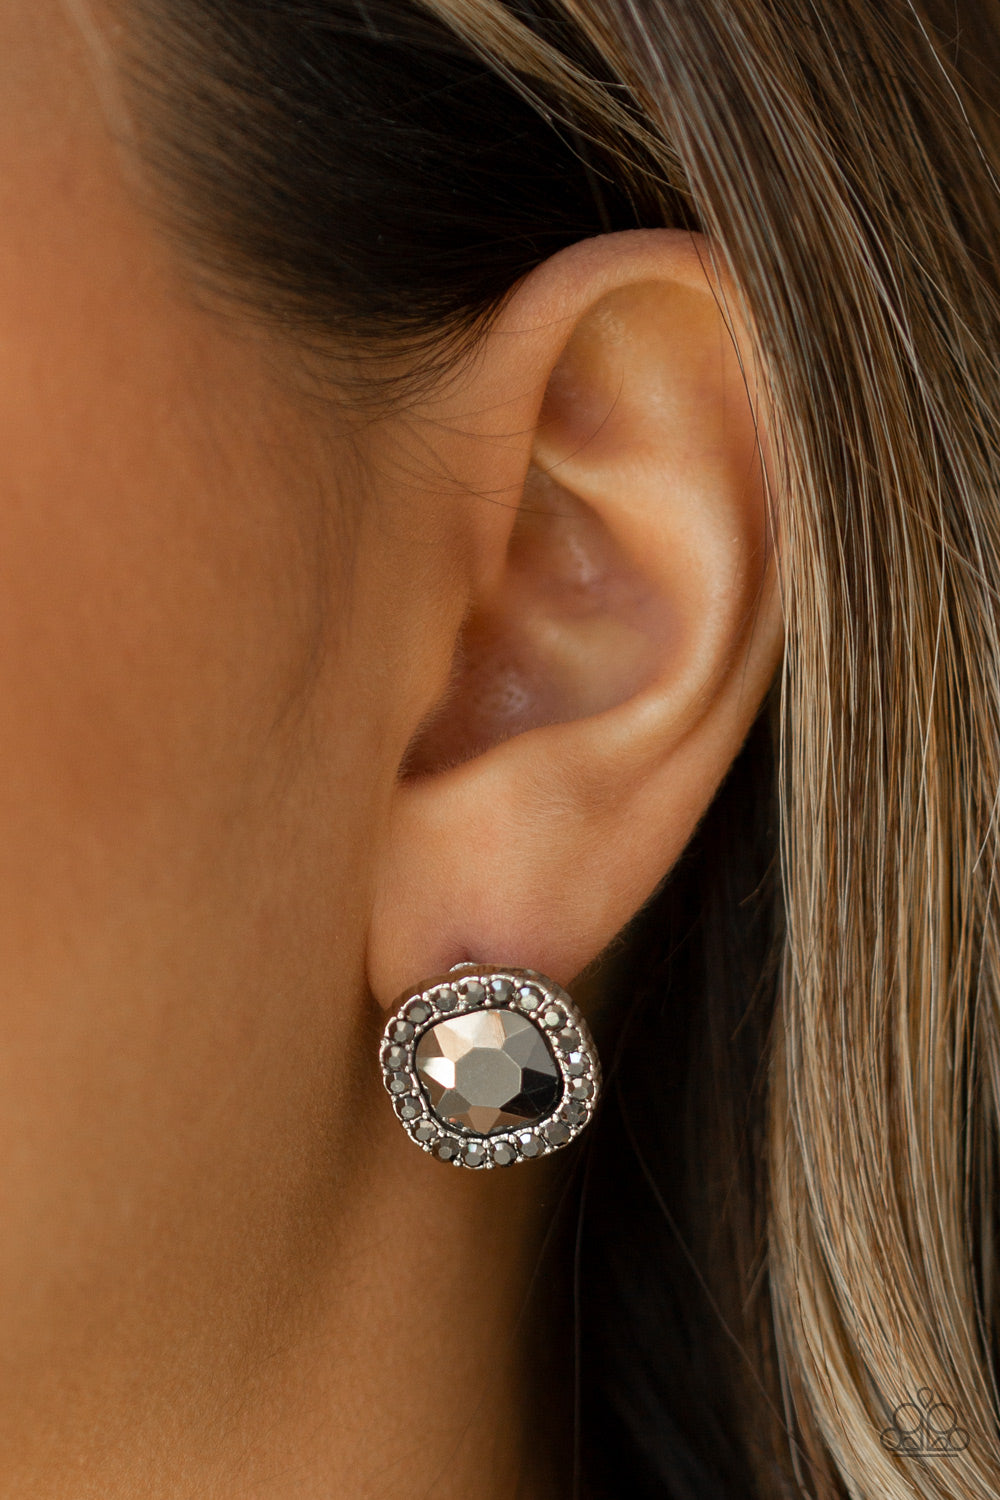 Bling Tastic! - Silver earrings